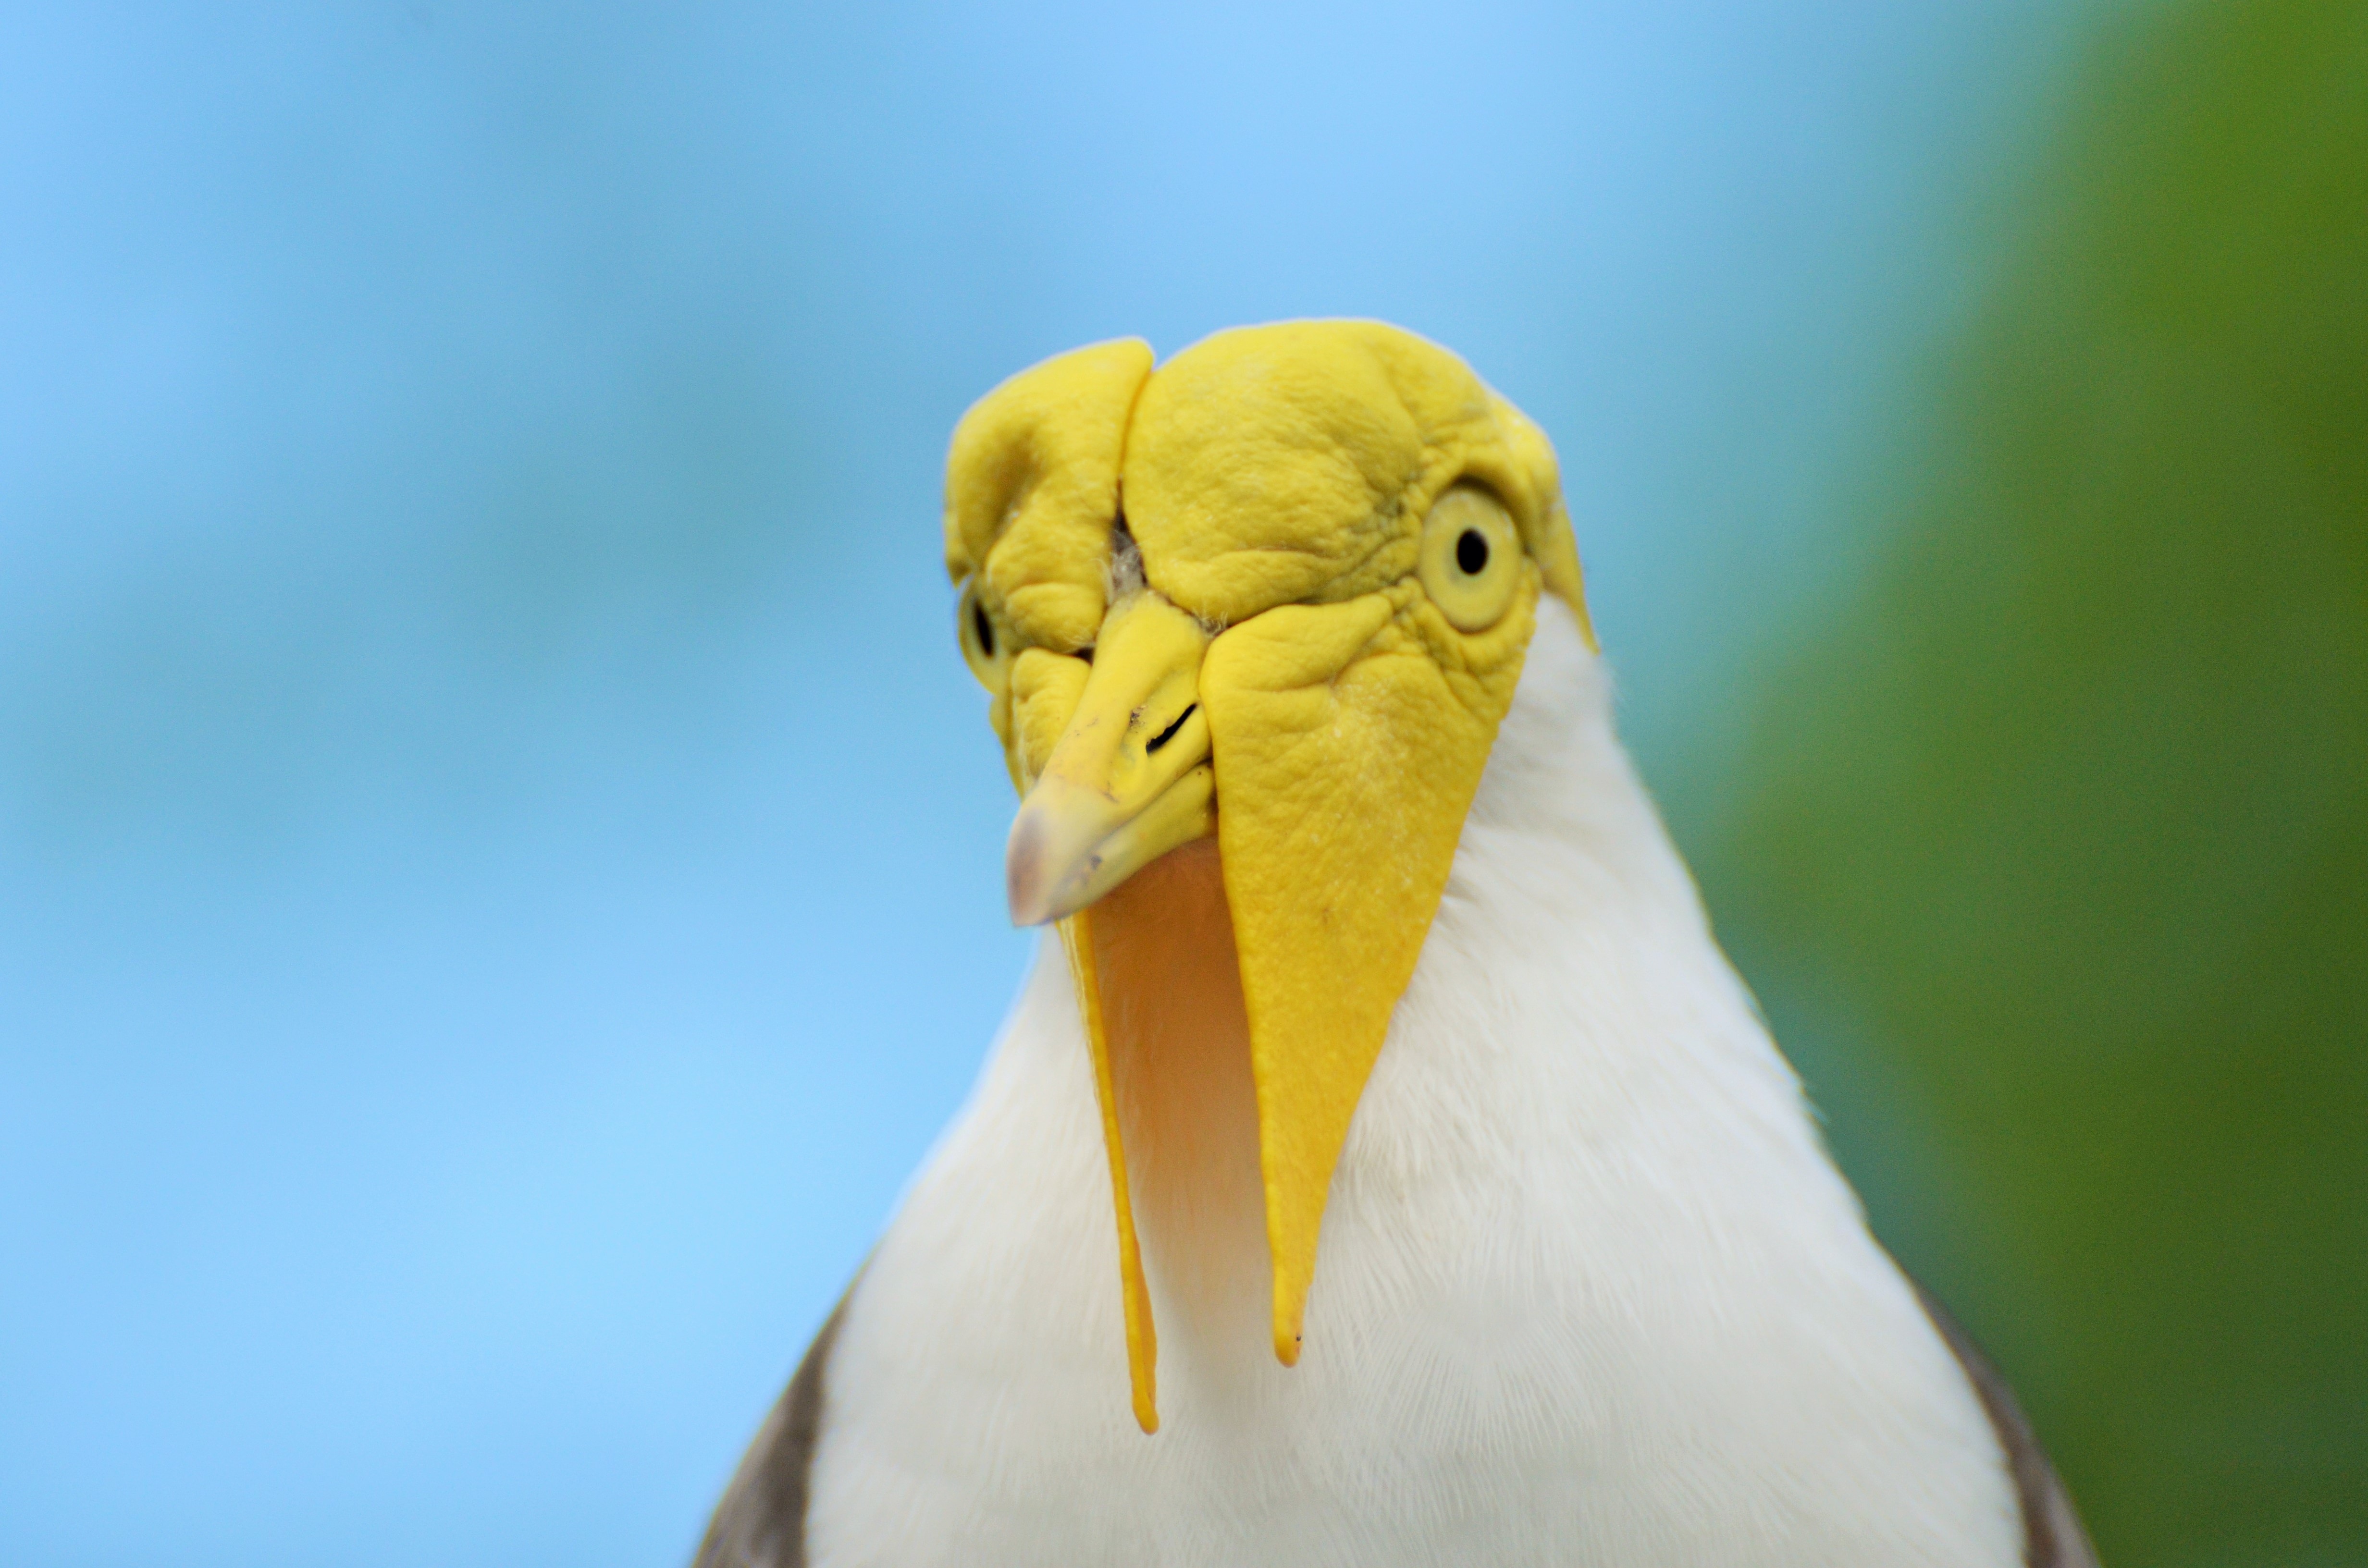 yellow and white long beak bird